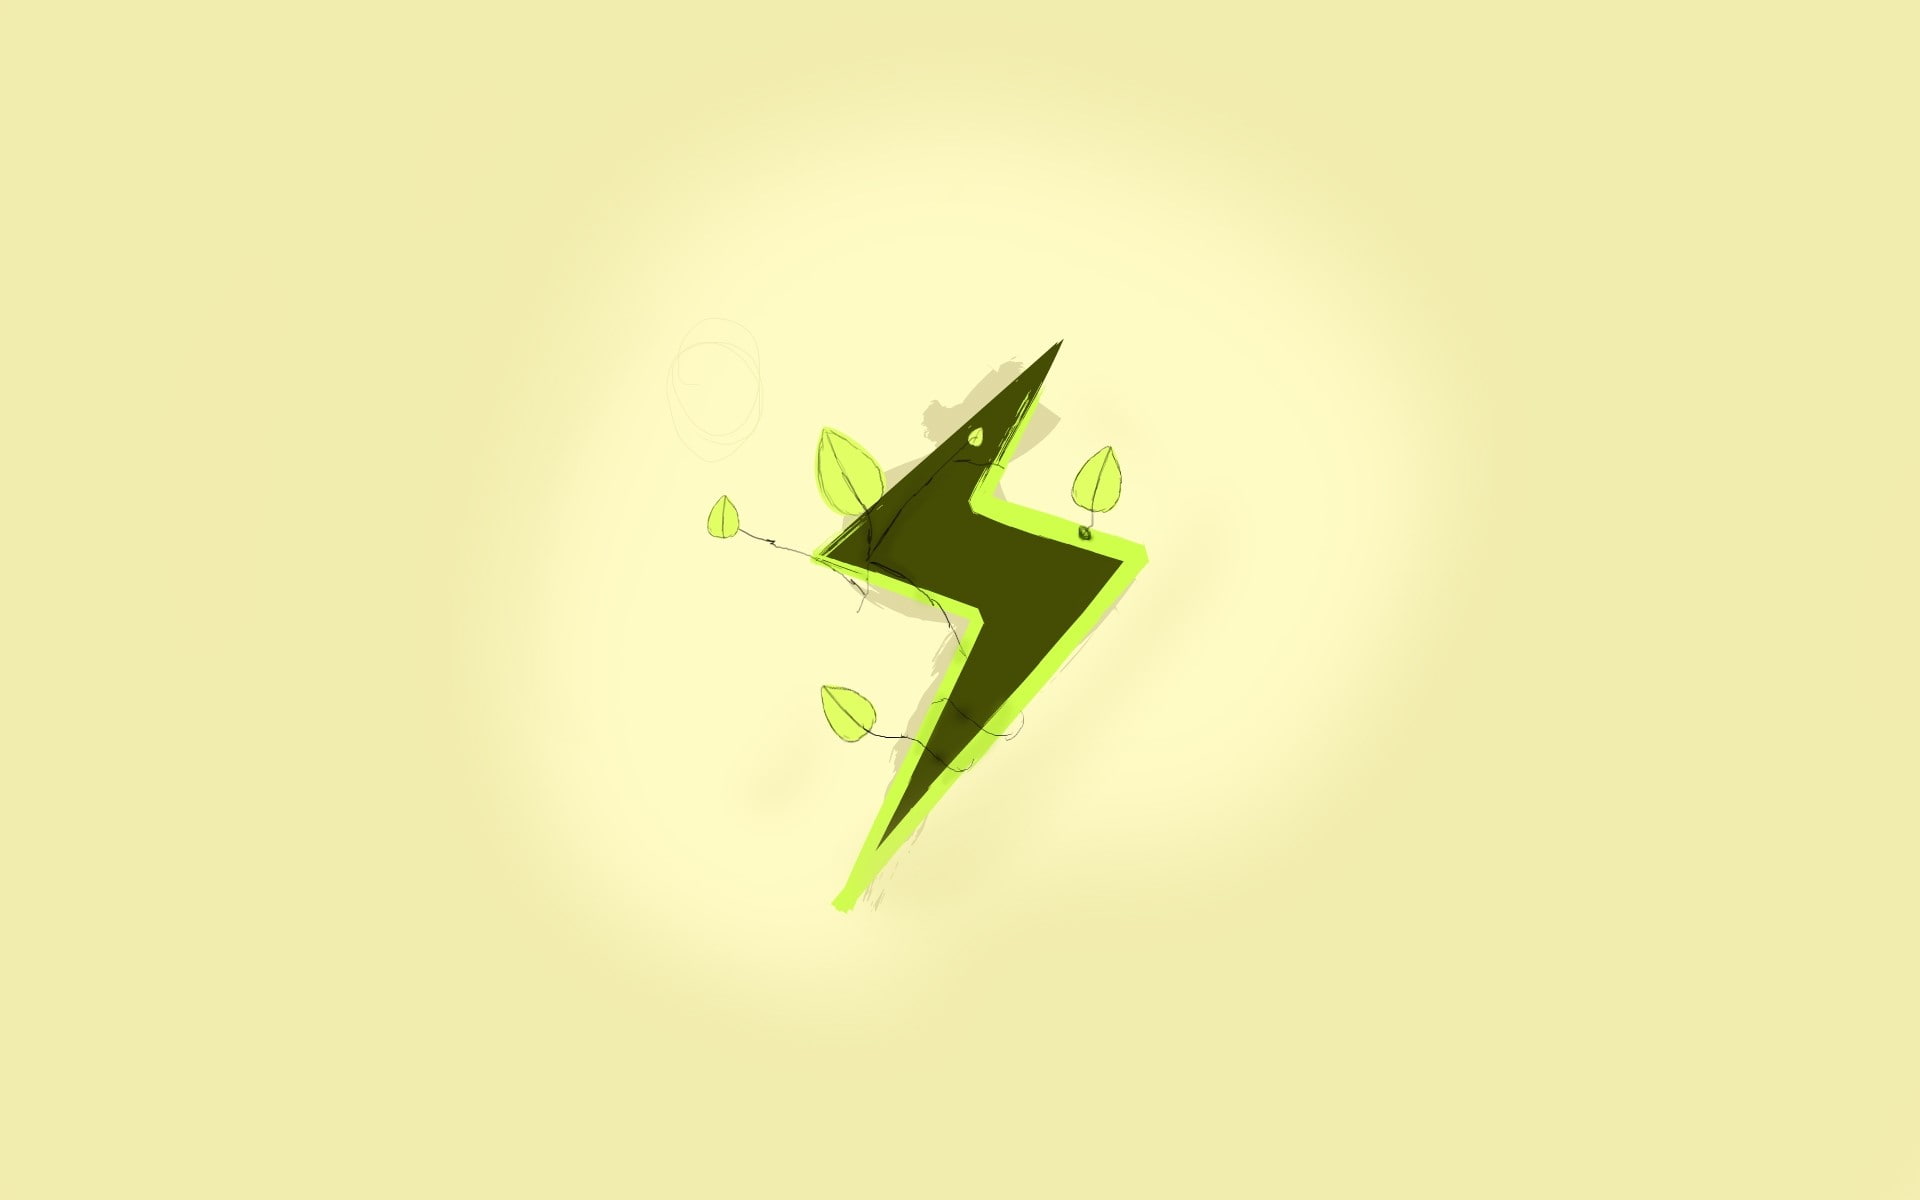 App storm, Apple, Mac, Yellow, Green, Symbol, Paper, green color